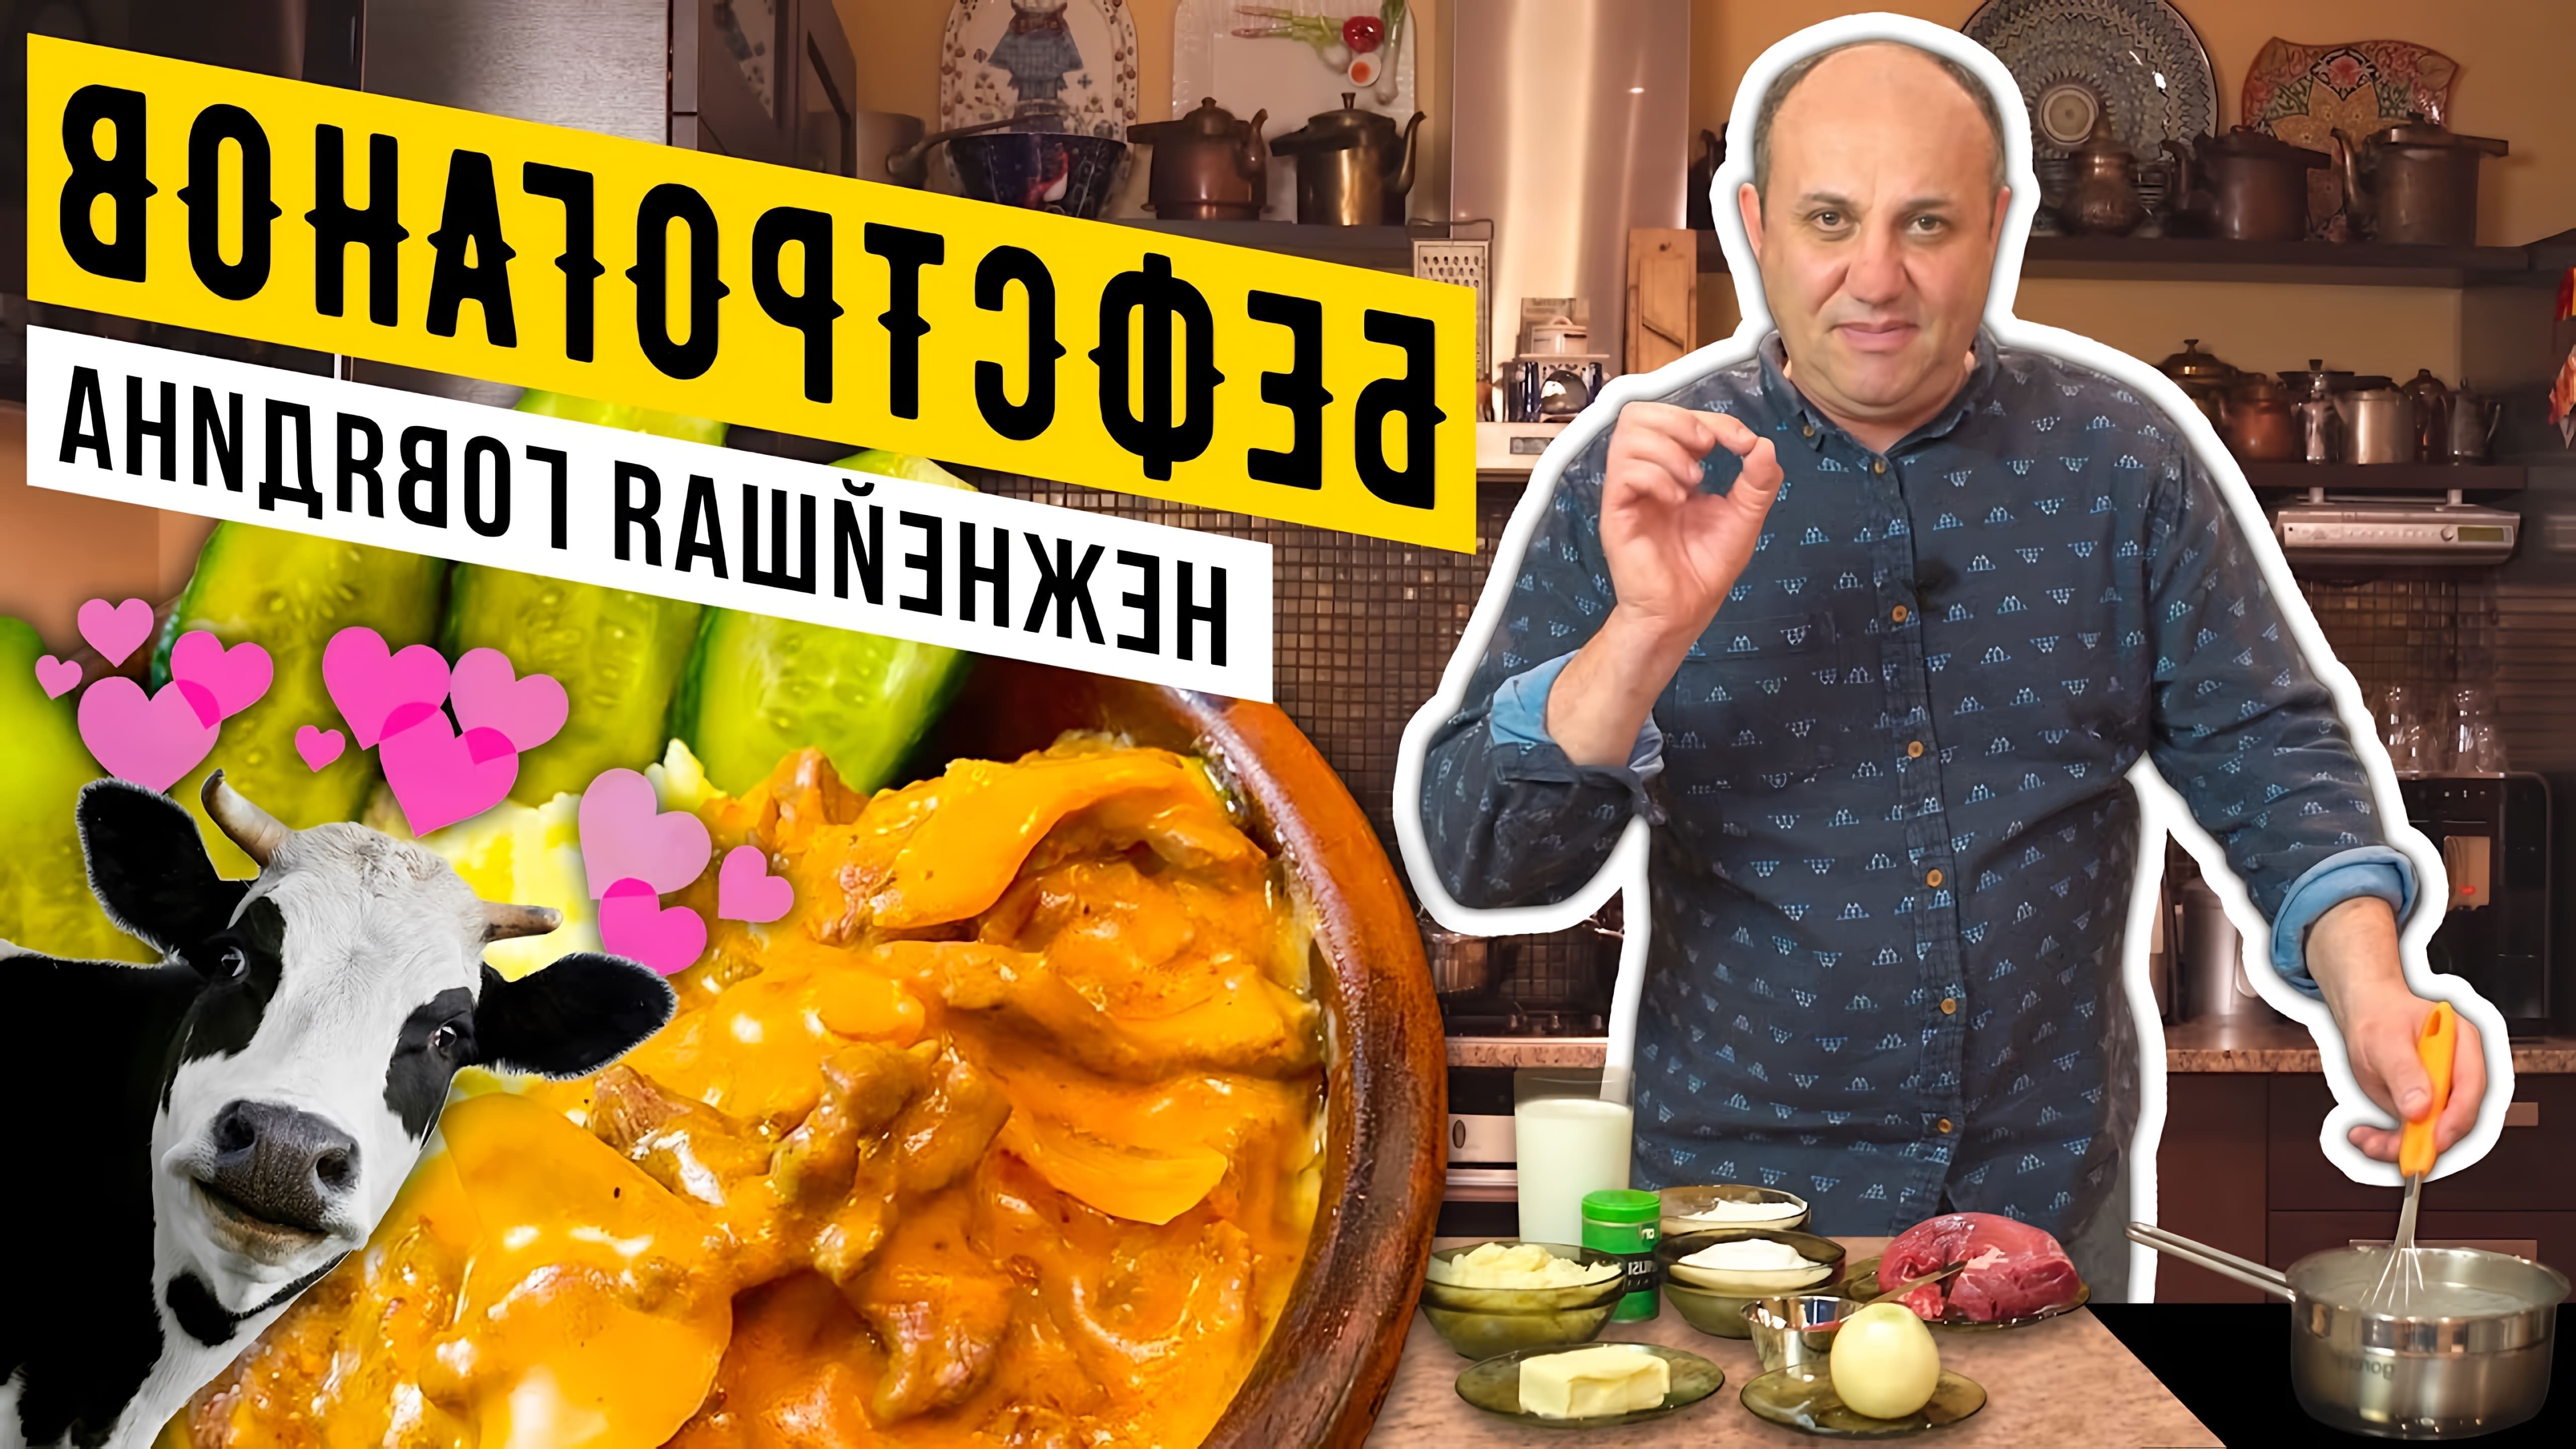 В данном видео Лазерсон показывает классический рецепт бефстроганов, начиная с приготовления соуса бешамель